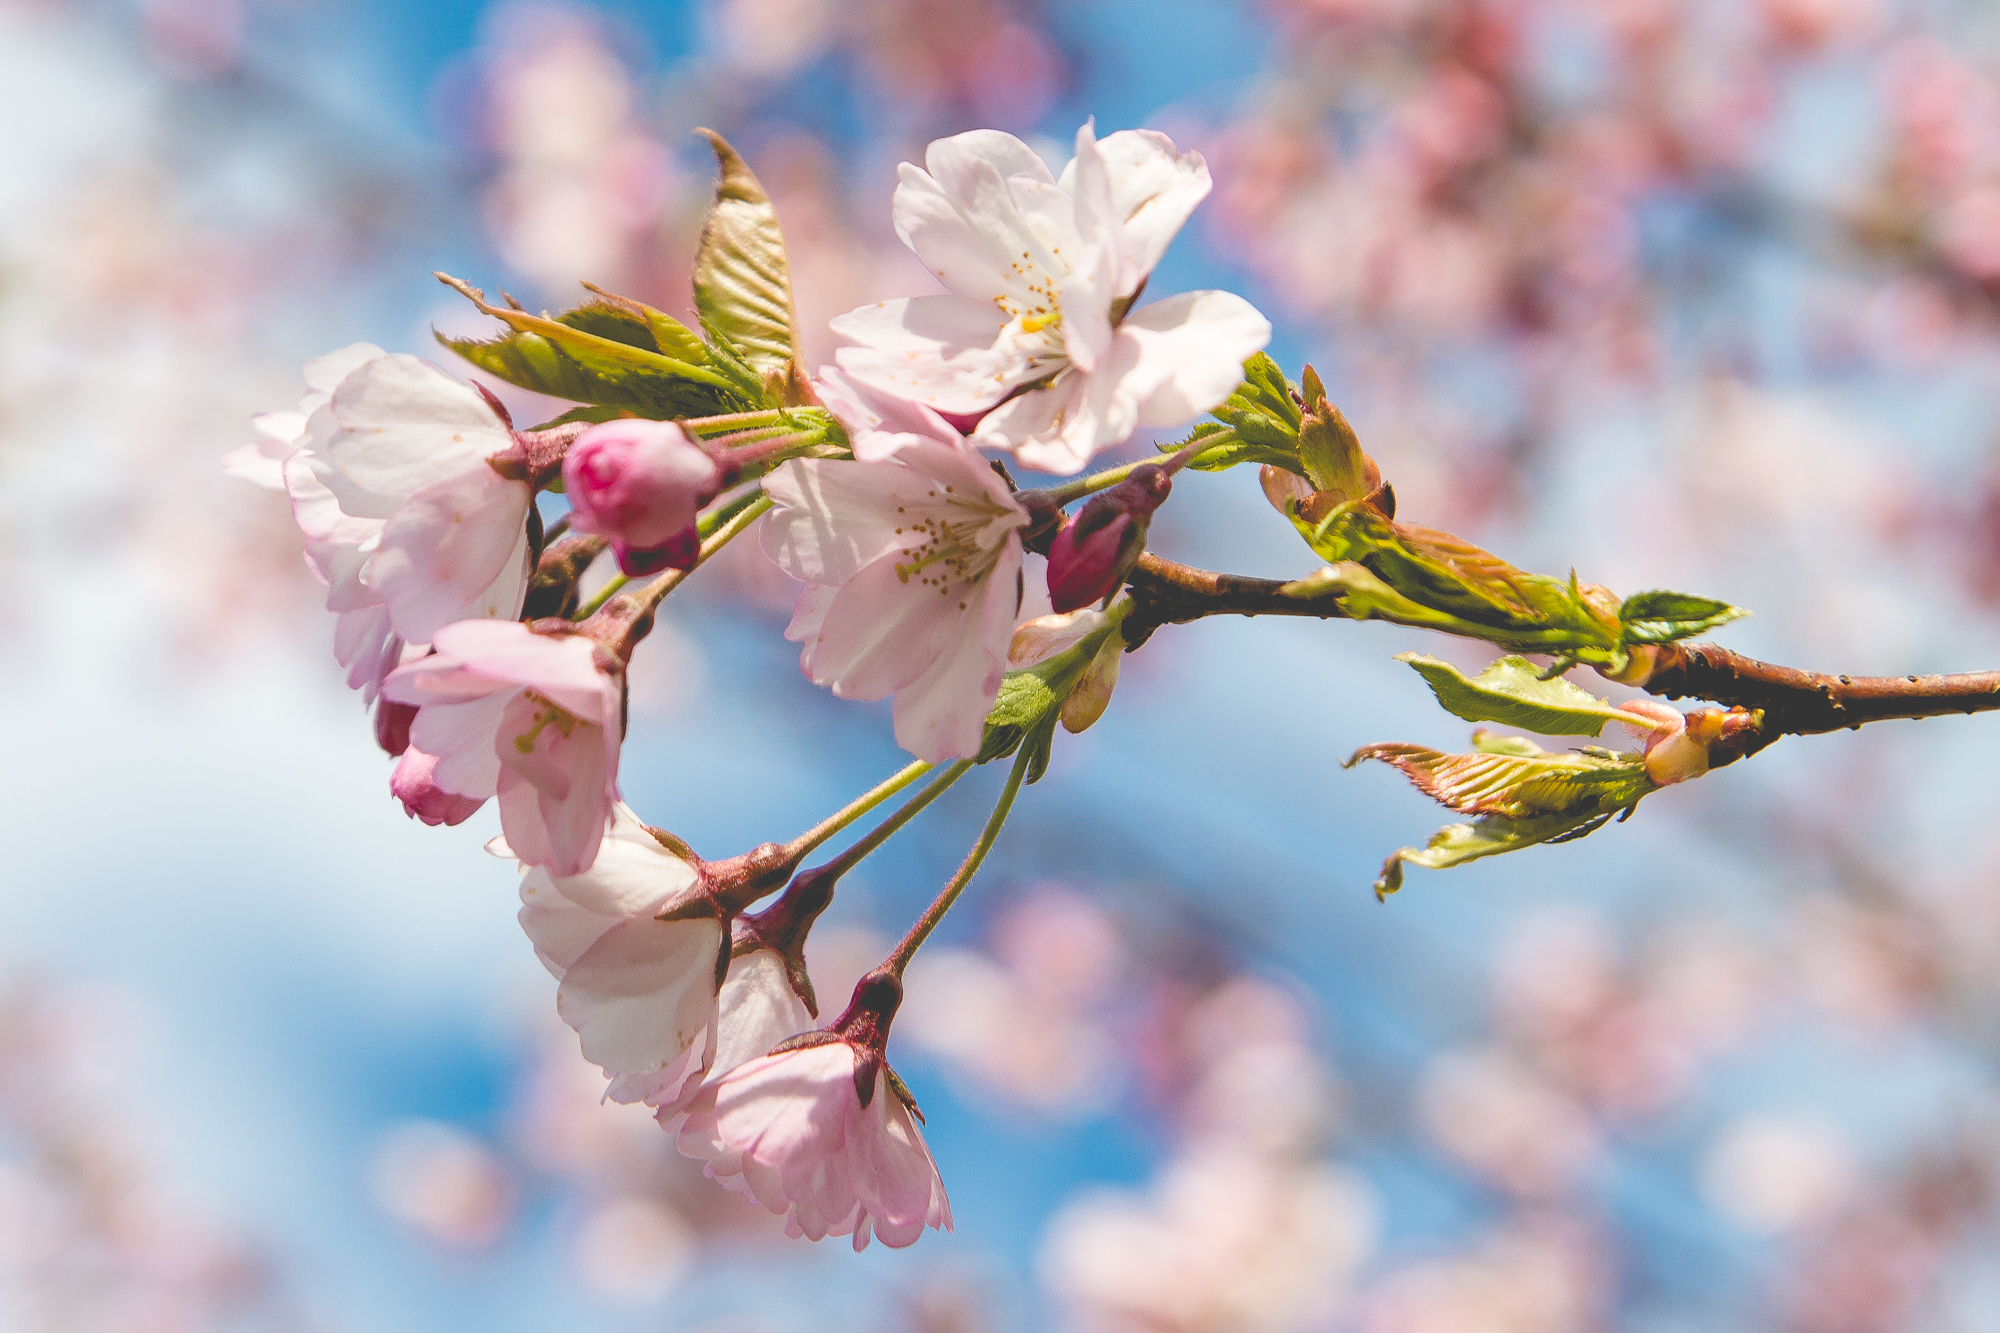 Flourished Cherry Blossom Via @Atisgailis